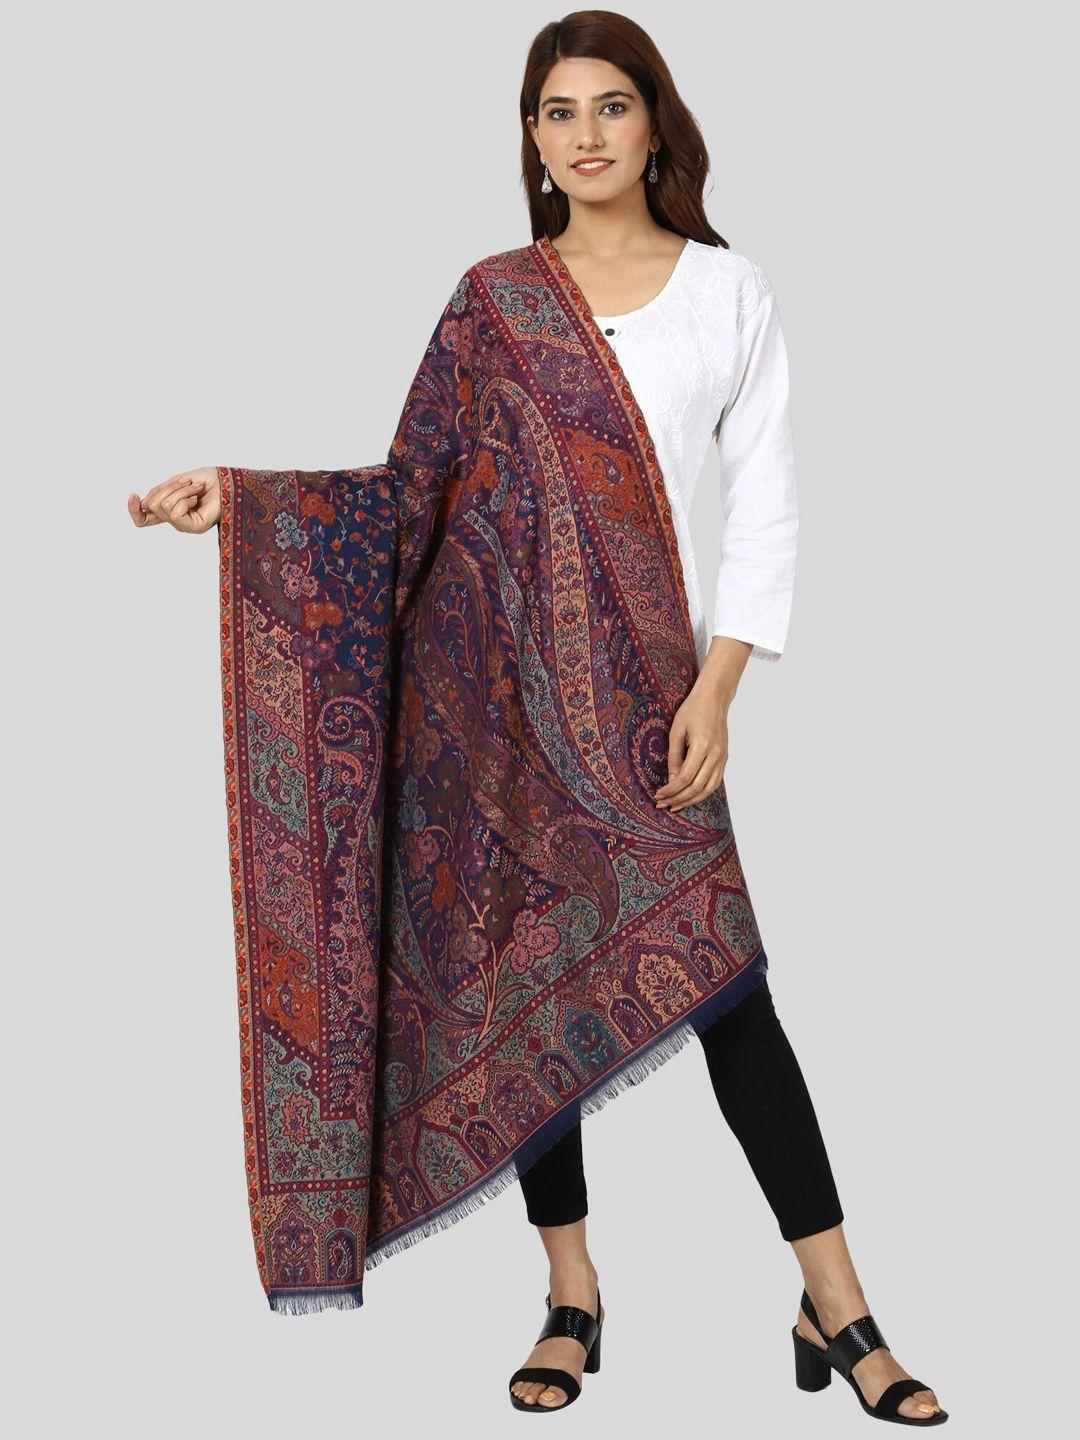 swi stylish ethnic motifs woven design kashmiri kani wool shawl